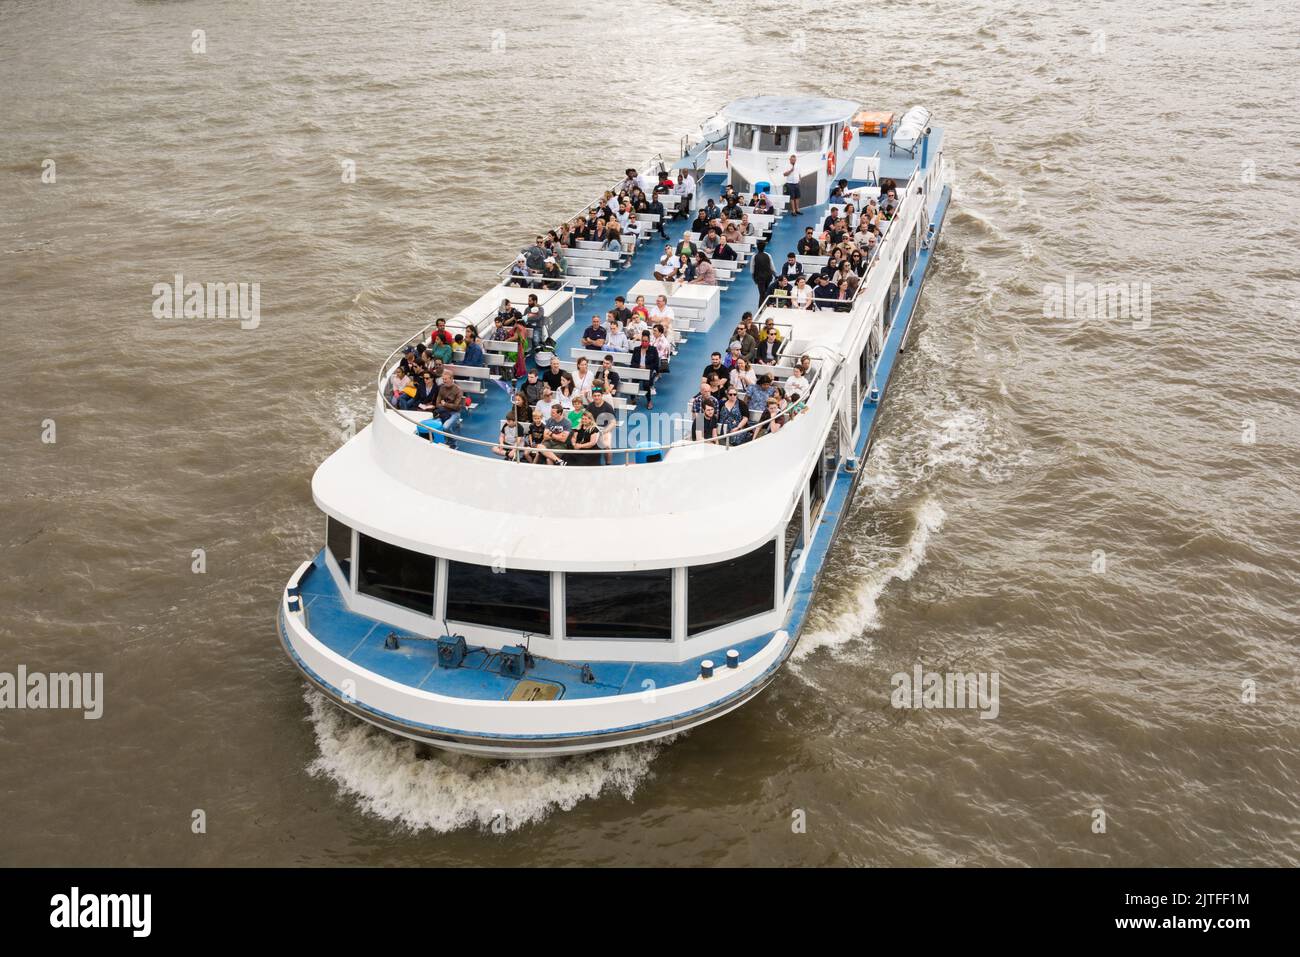 Gros plan des touristes à bord d'un bateau de plaisance sur la Tamise, Londres, Angleterre, Royaume-Uni Banque D'Images